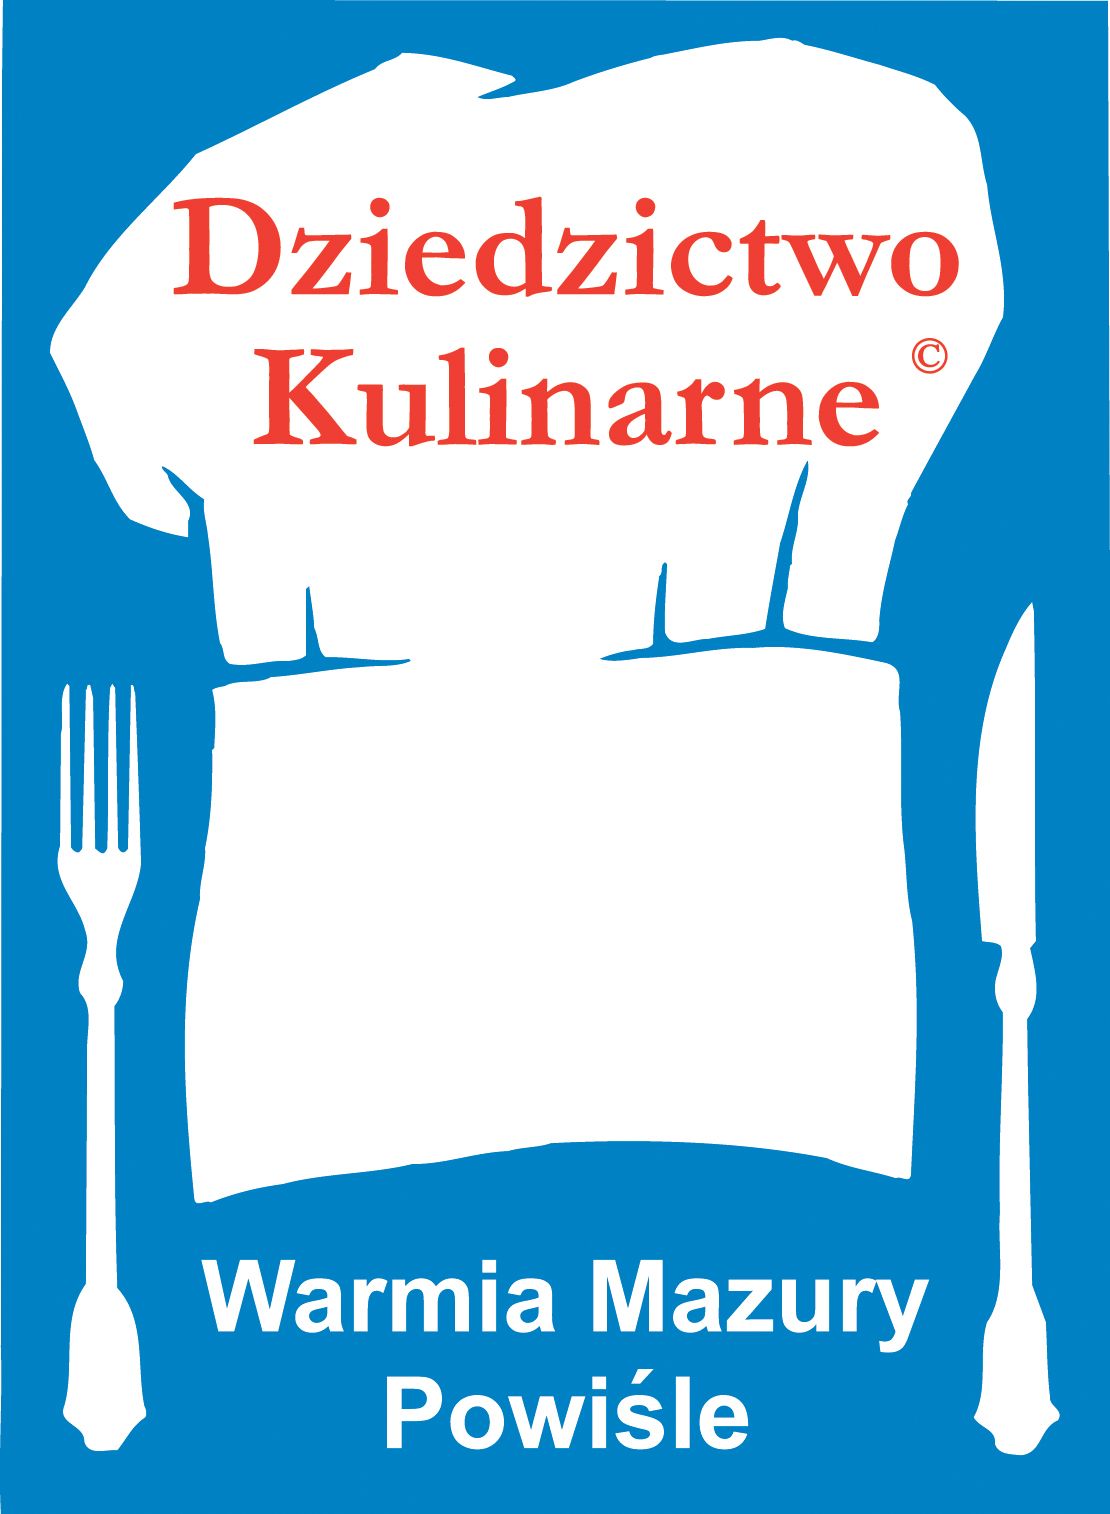 Logo - Dziedzictwo kulinarne Warmia Mazury Powiśle